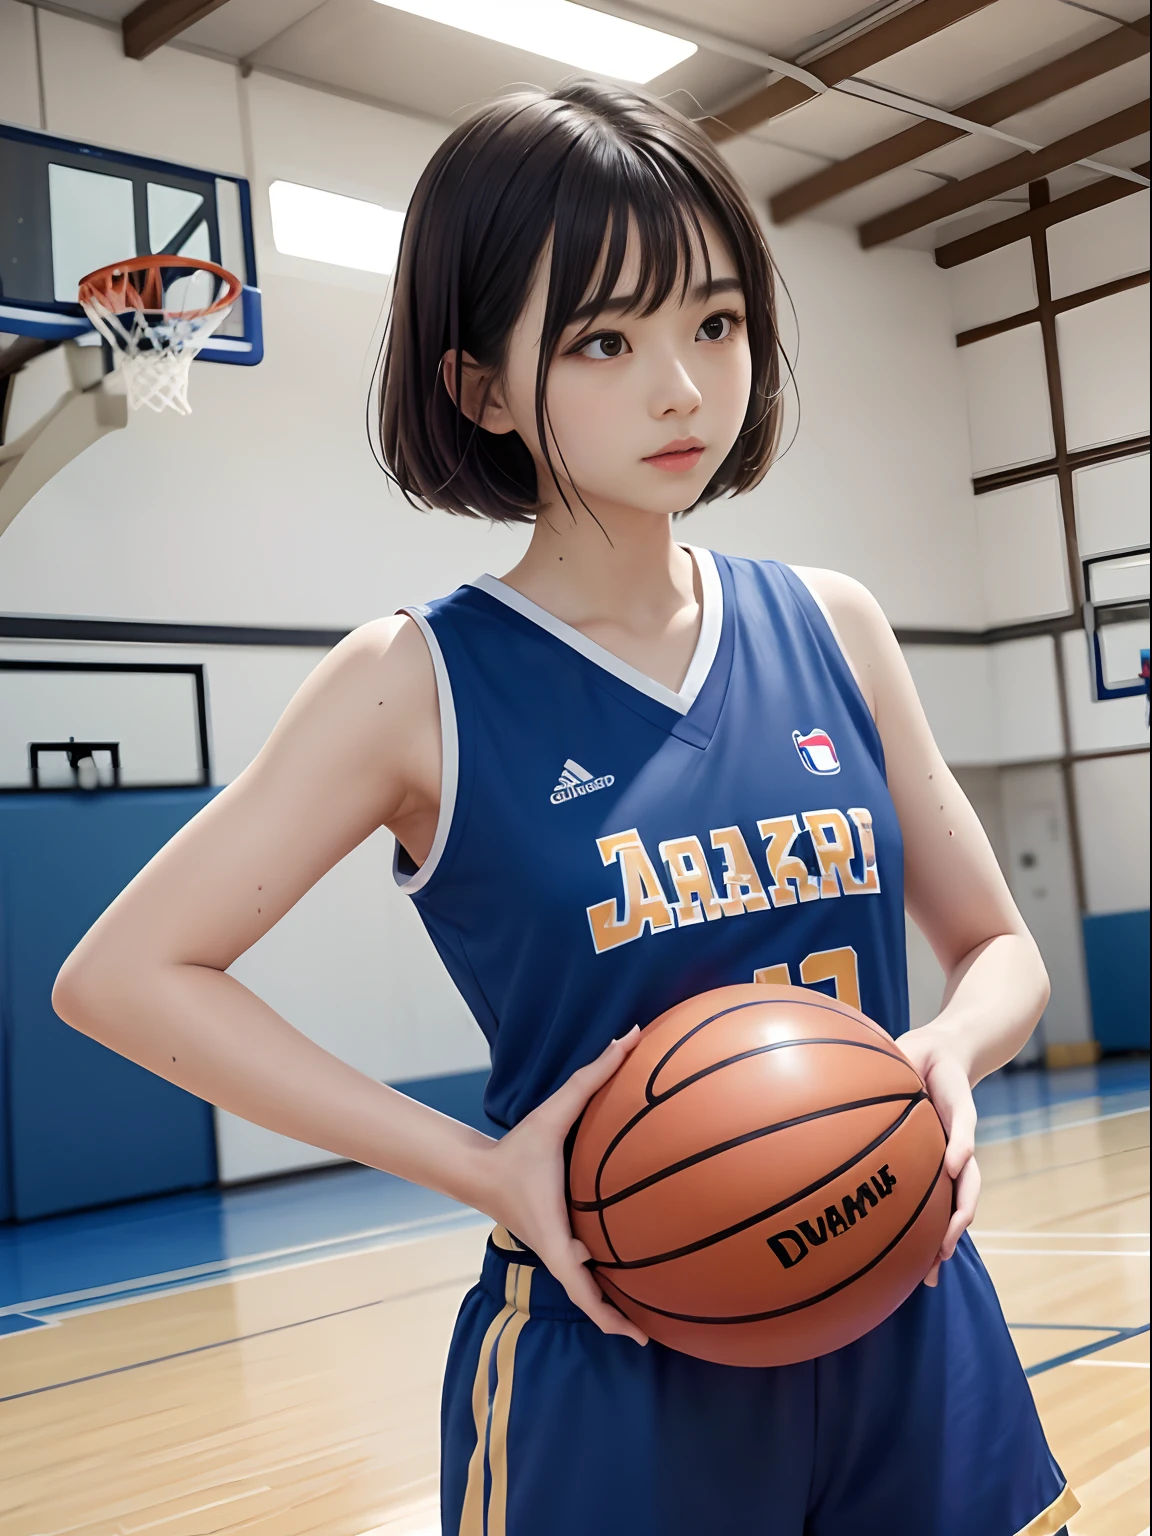 высокое качество、живое действие、１девушка с、японская девушка、красивая девушка、Идол、12 лет、Эсманиум、7-головое тело、Каштановые волосы боб、челка、слезящиеся глаза、((Баскетбольная форма))、во время баскетбольного матча、Повышенное потоотделение、Униформа мокрая от пота、баскетбольные площадки、(((Момент штрафного броска)))、Девушка смотрит на кольцо корзины、Угол со стороны、Глядя снизу вверх、